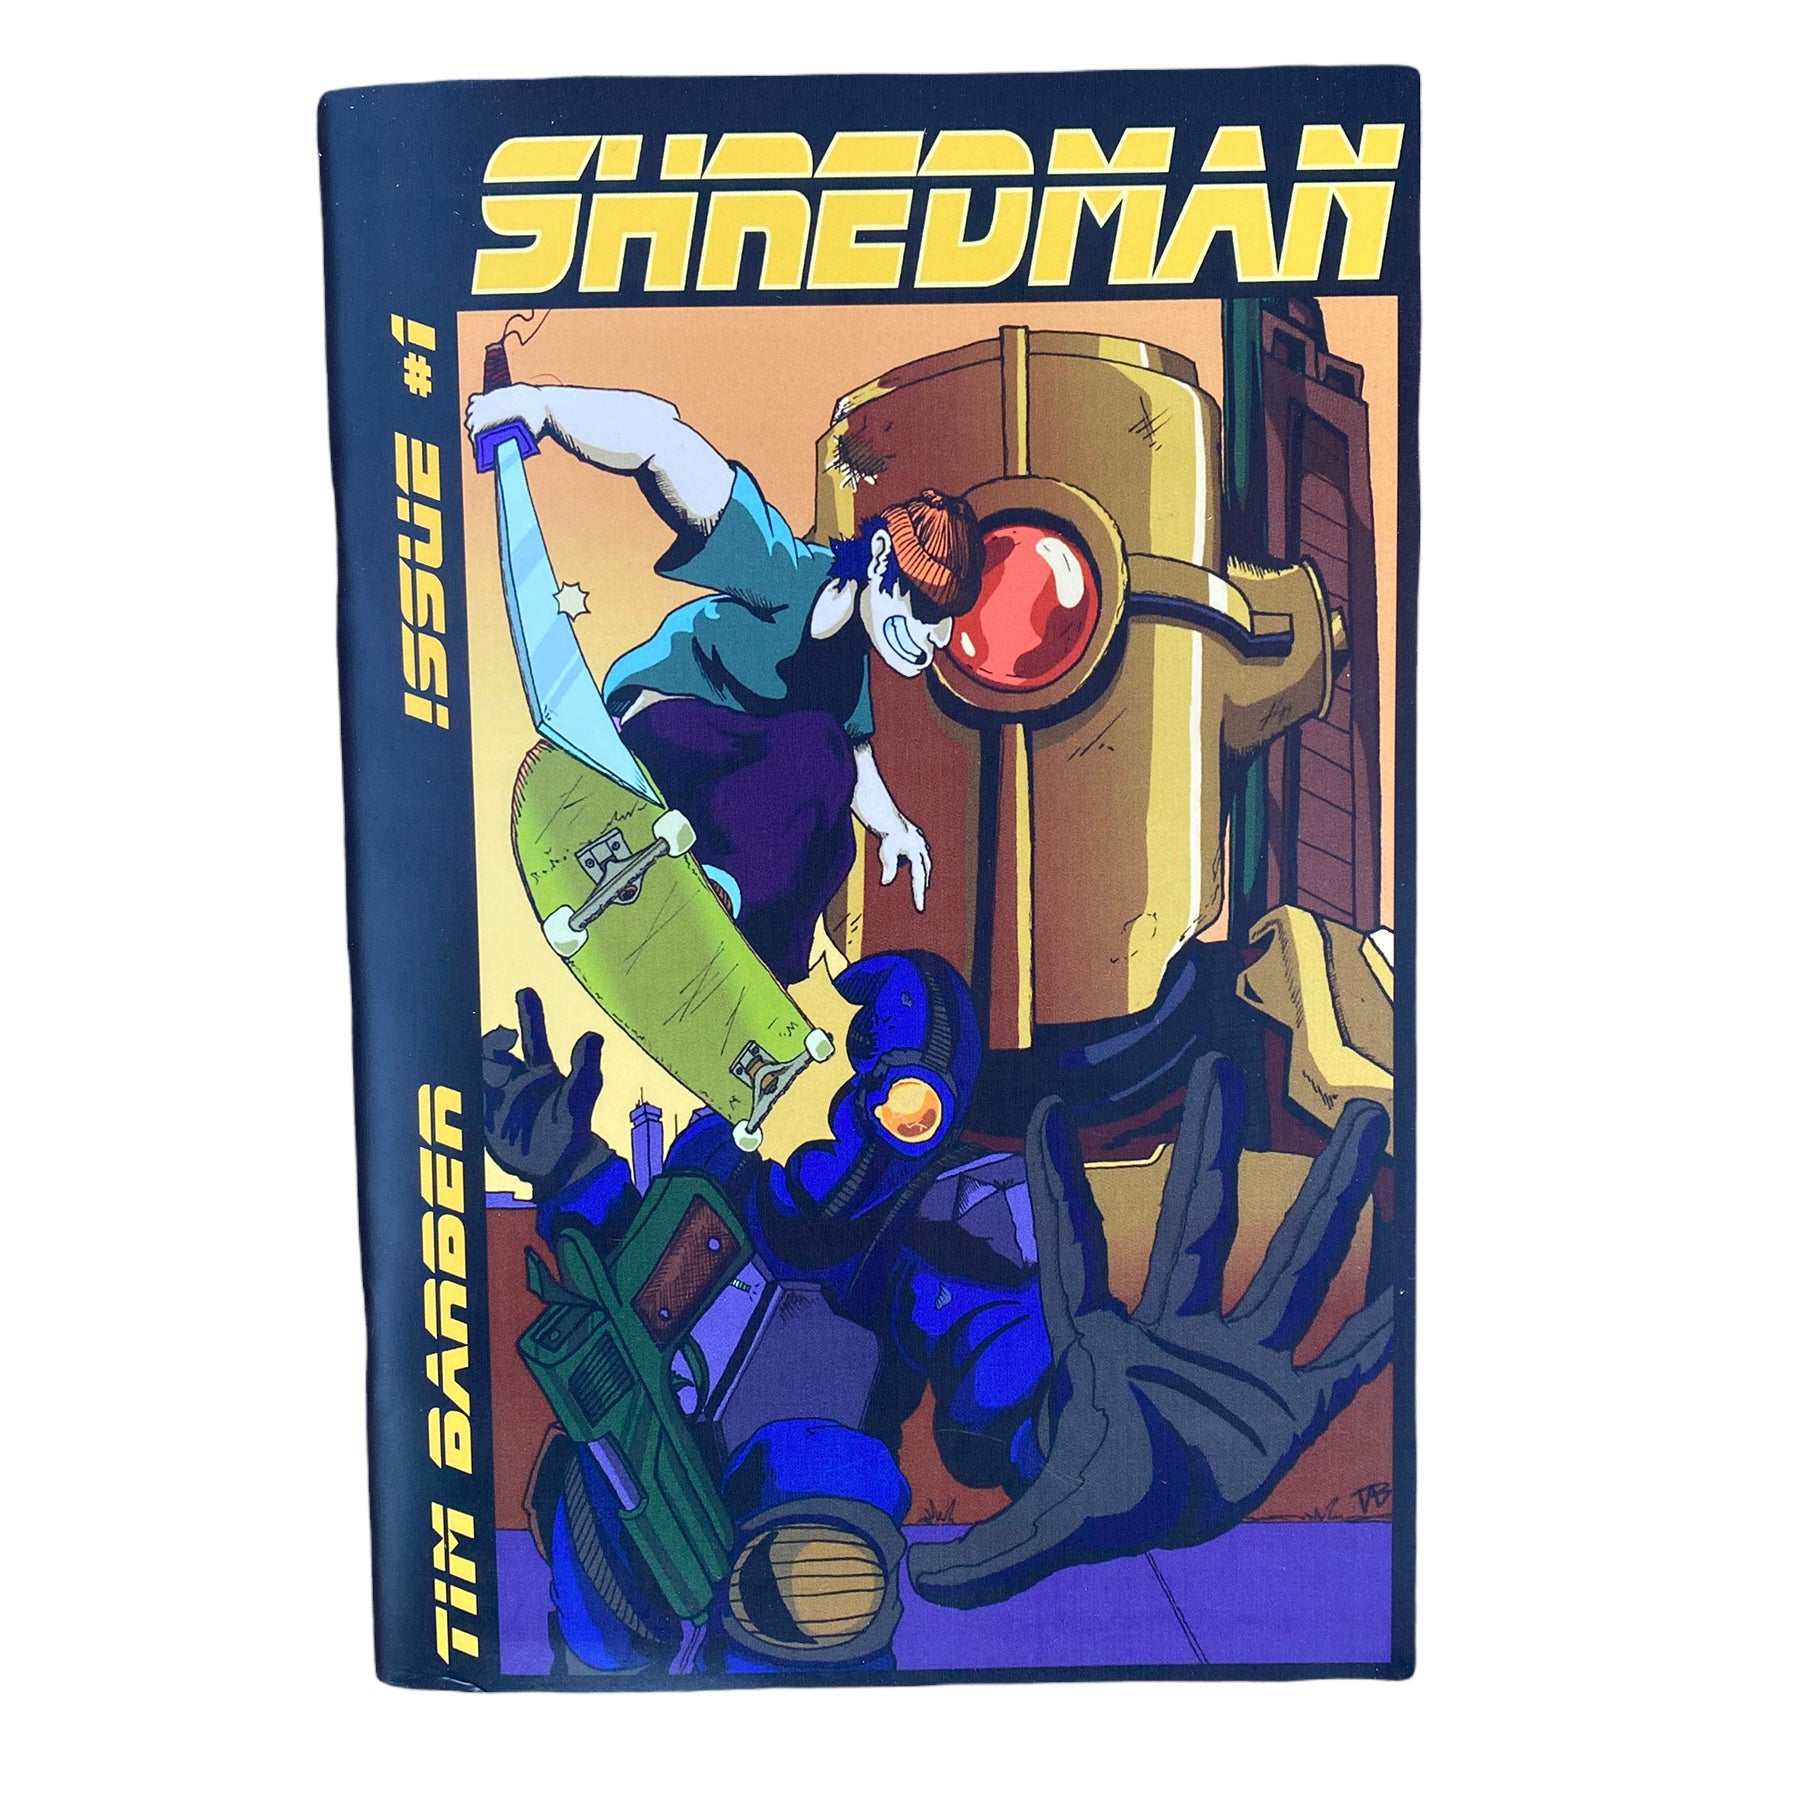 Shredman Comic Issue #1